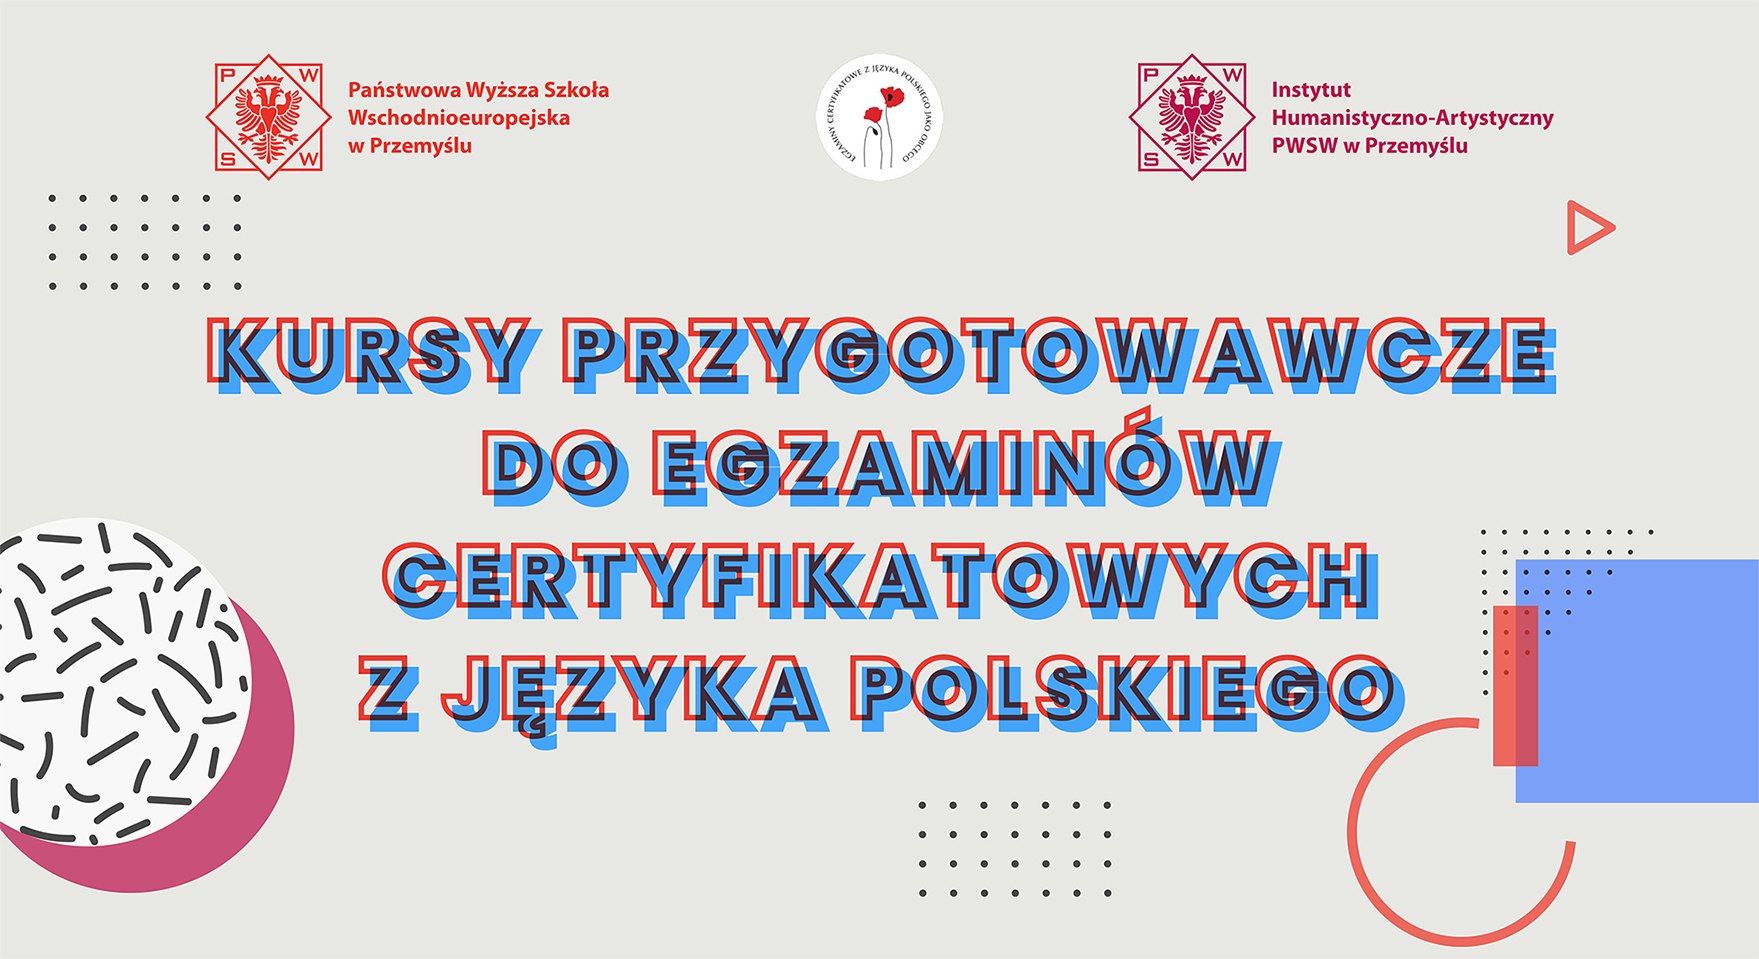 Kursy przygotowawcze do egzaminów certyfikatowych z języka polskiego